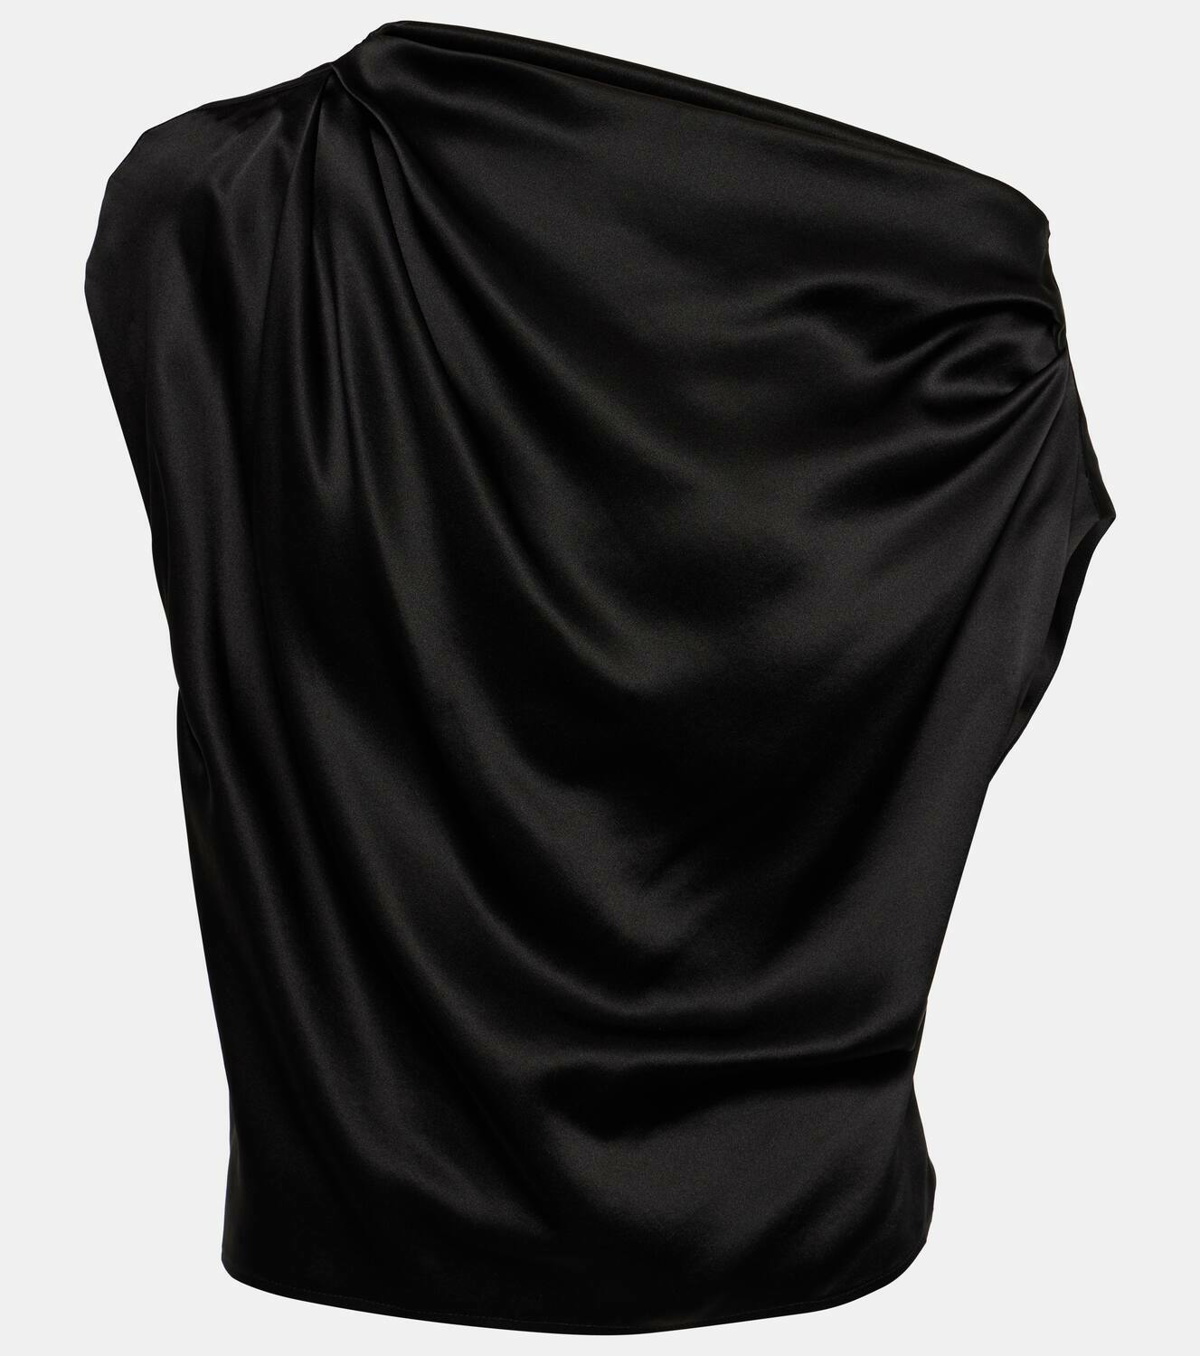 Silk blazer in black - The Sei